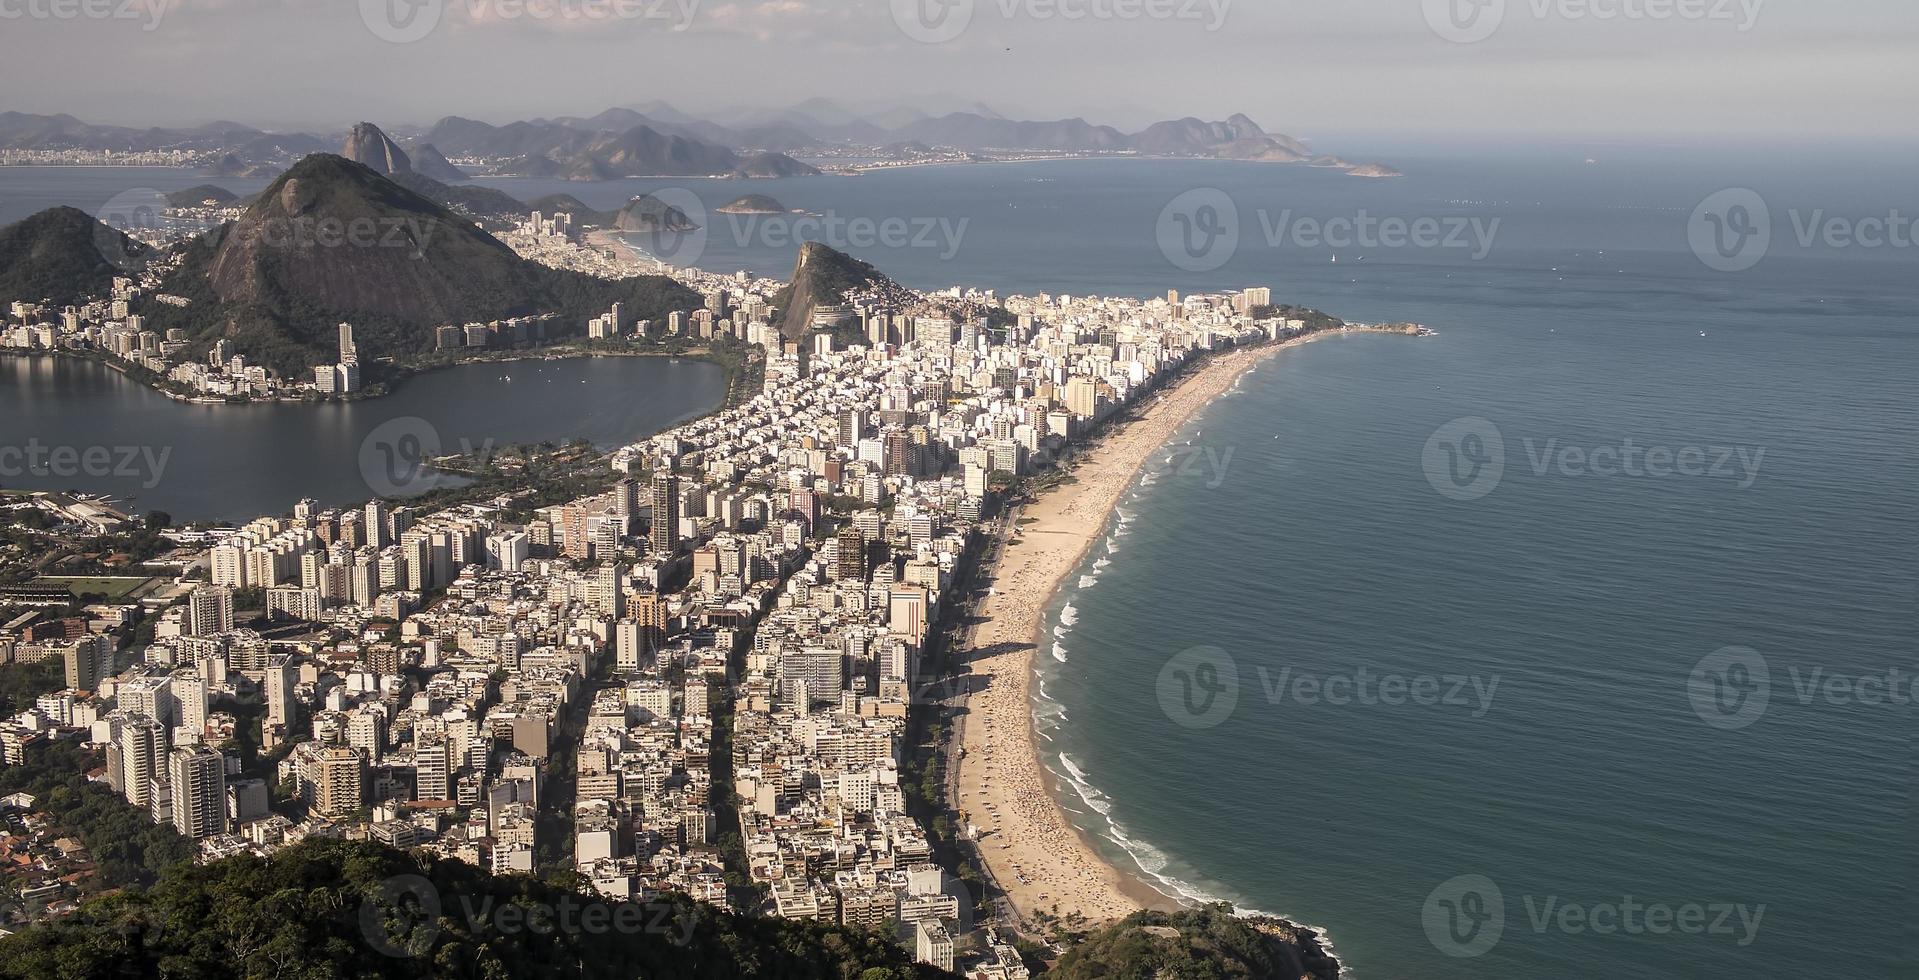 Rio de Janeiro foto